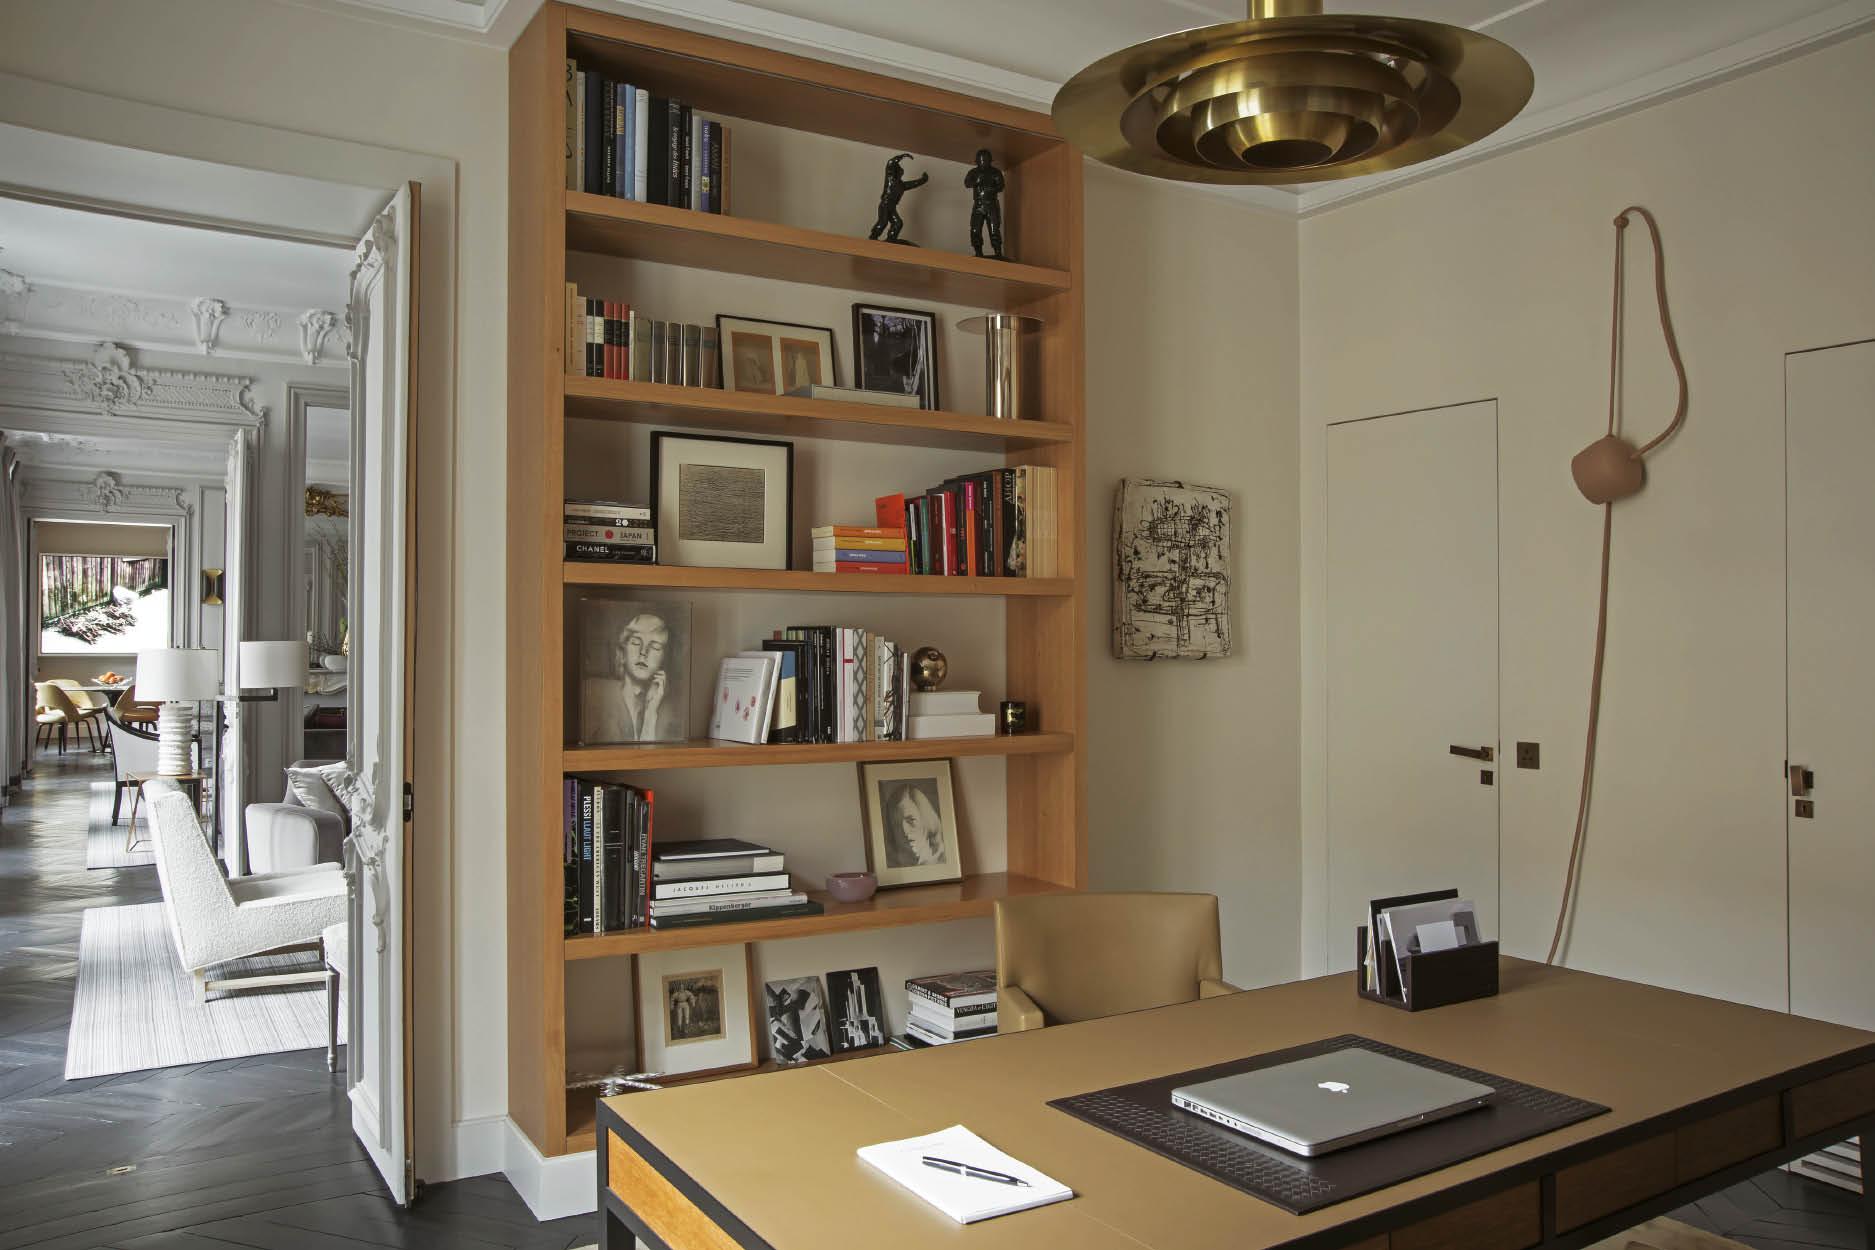 Parisian Chic: Step Inside a Newly Designed Elegant Apartment 